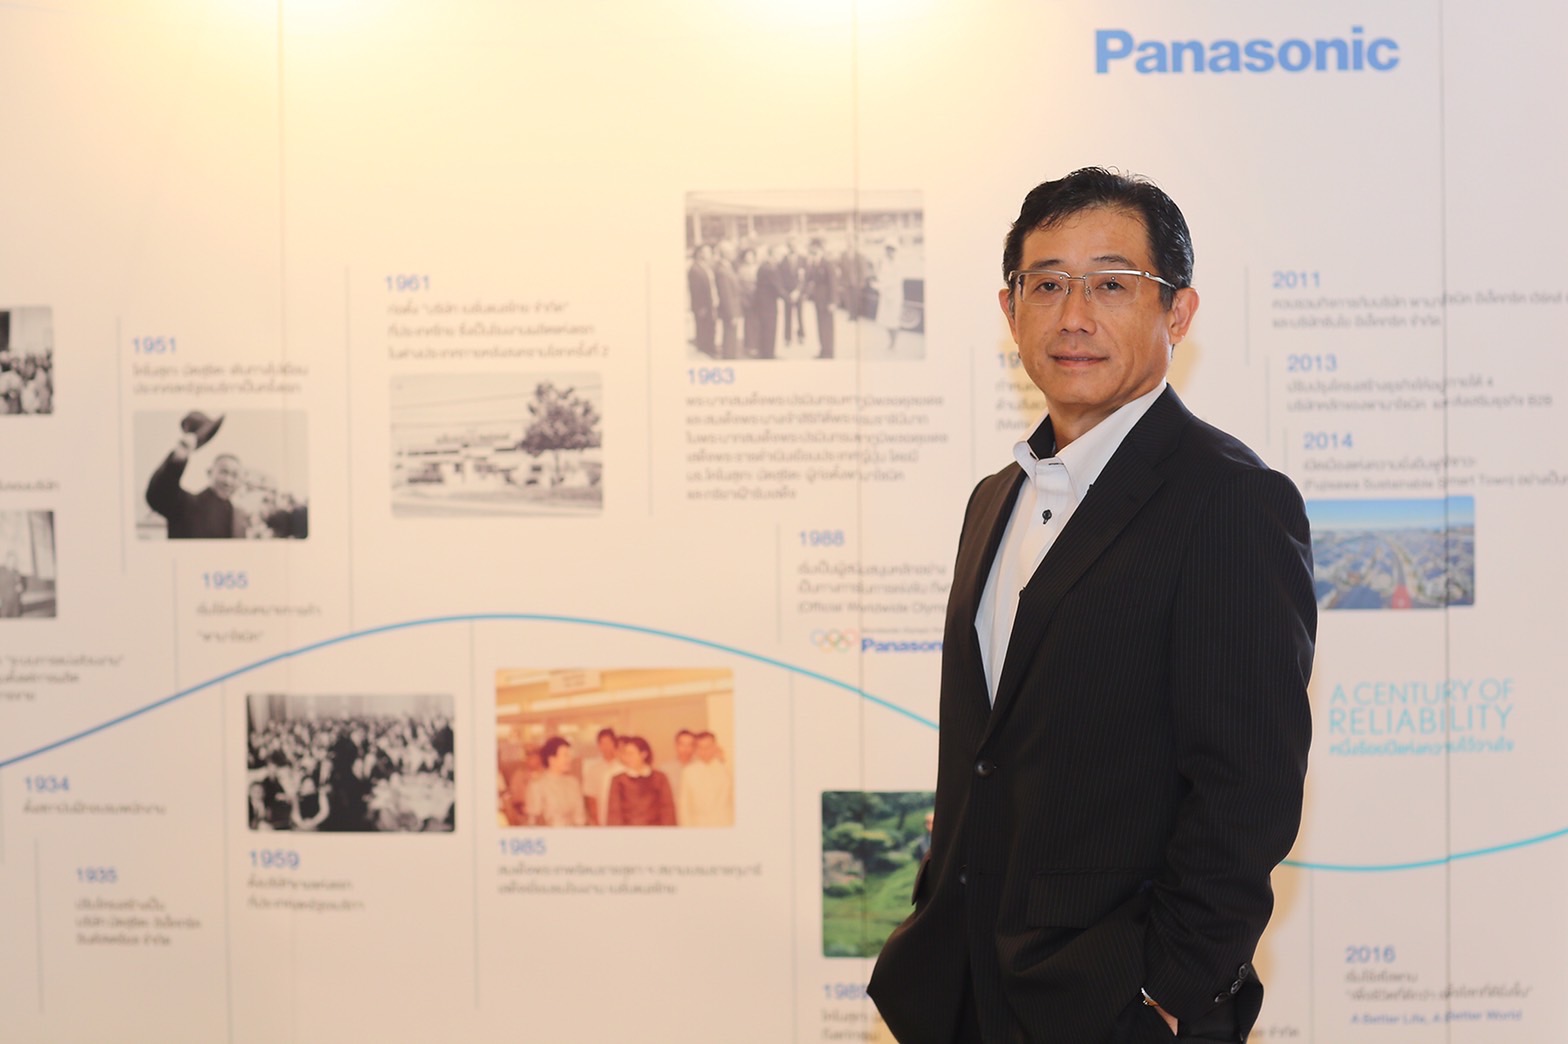 พานาโซนิคปรับผังใหญ่ควบรวม 3 บริษัทภายใต้ พานาโซนิค โซลูชั่นส์ ประเทศไทย